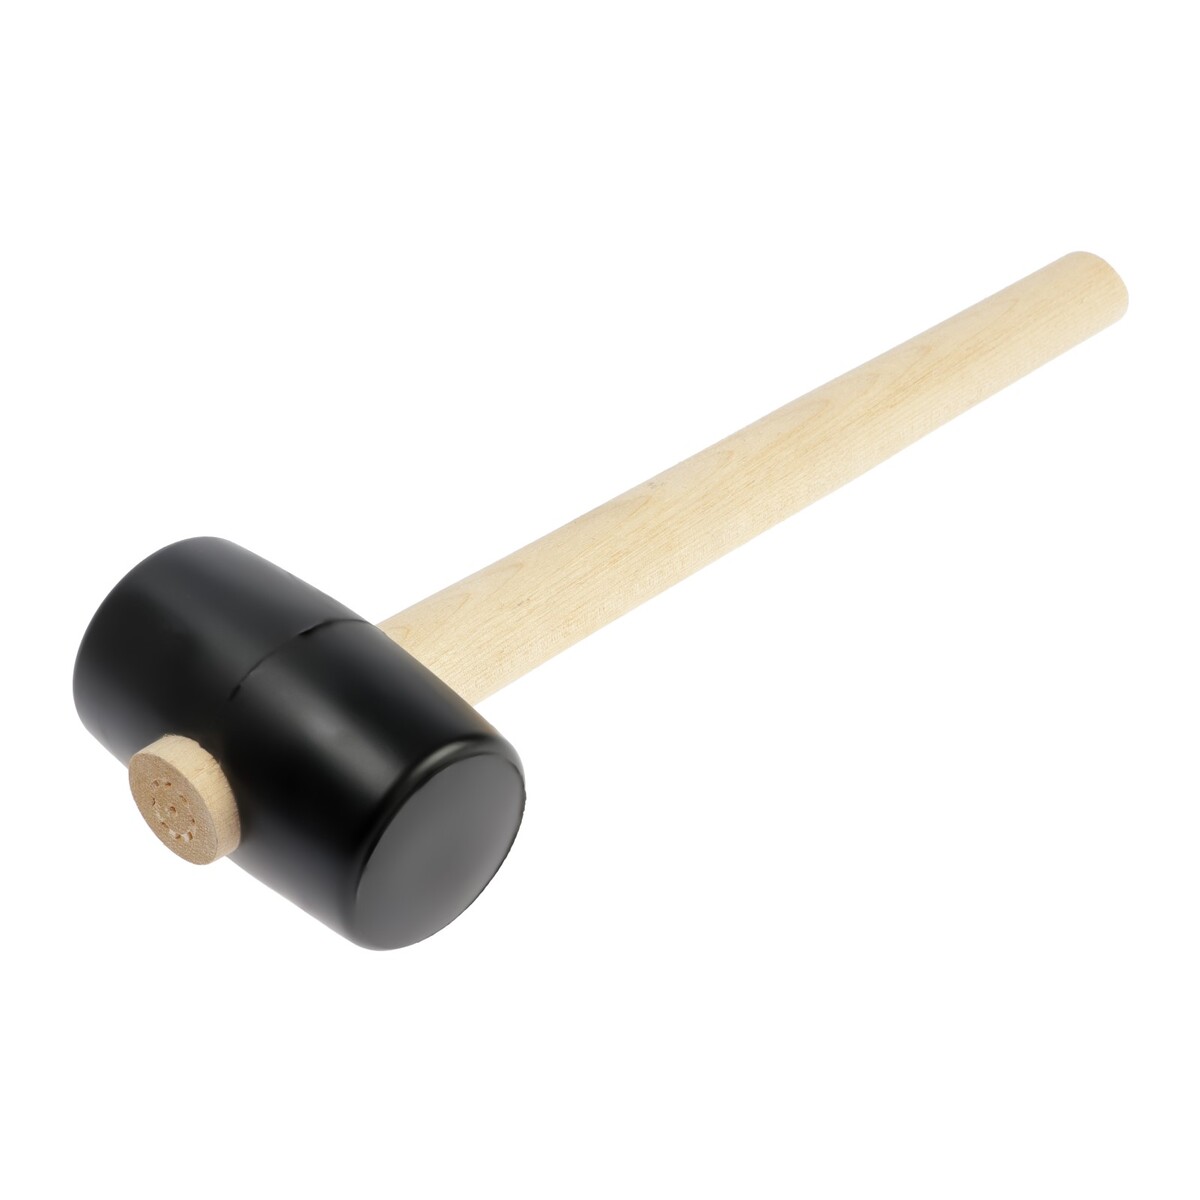 Киянка лом, деревянная рукоятка, черная резина, 55 мм, 300 г киянка тундра деревянная рукоятка черная резина 225 г